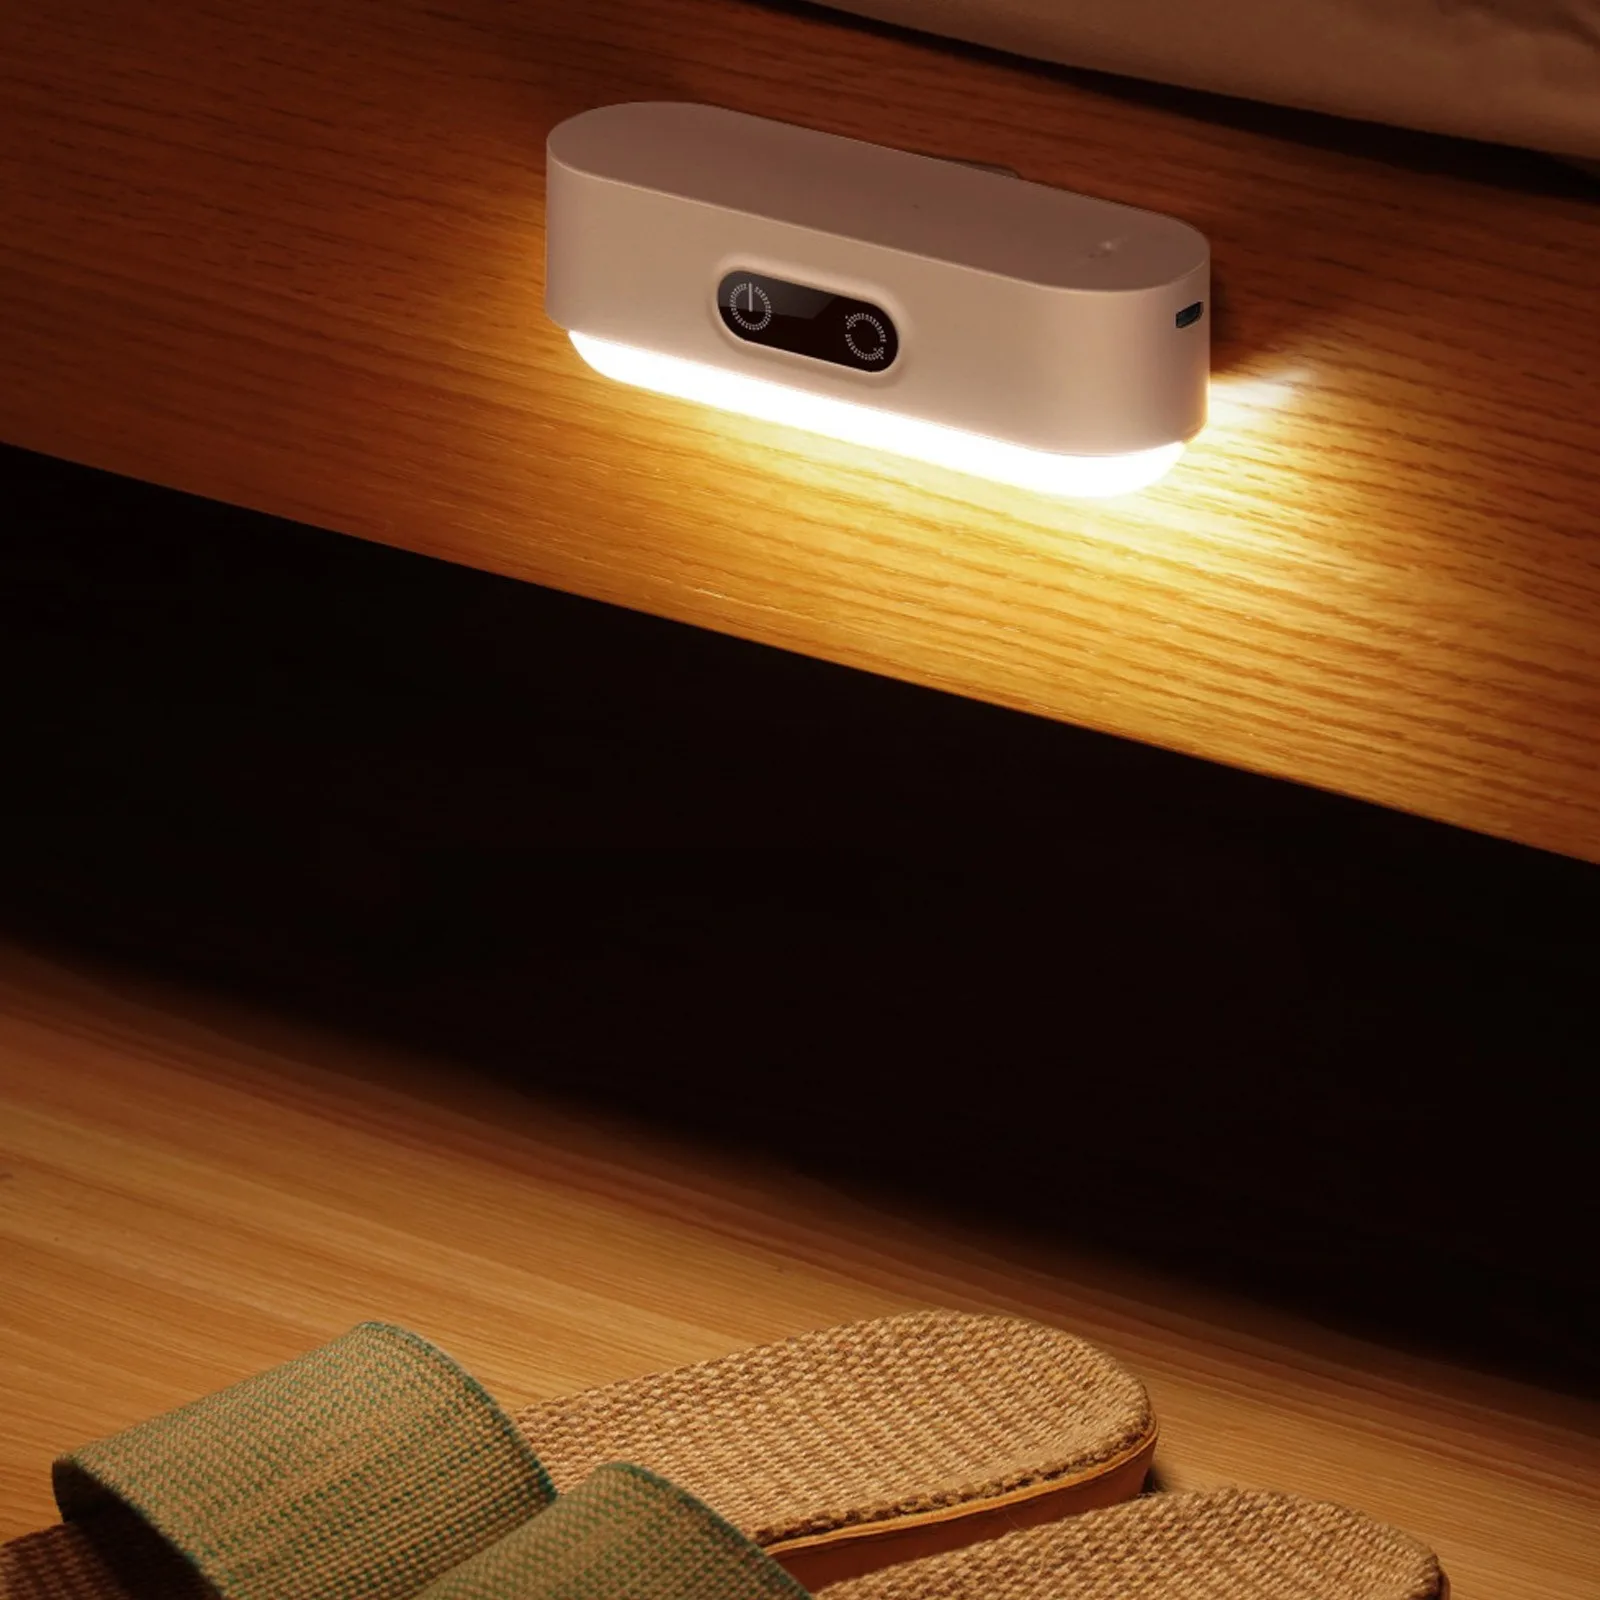 

Лампа для защиты глаз, прикроватная магнитная лампа для чтения в студенческом общежитии, с сенсорным экраном и USB-разъемом, светильник для шкафа, крутая лампа